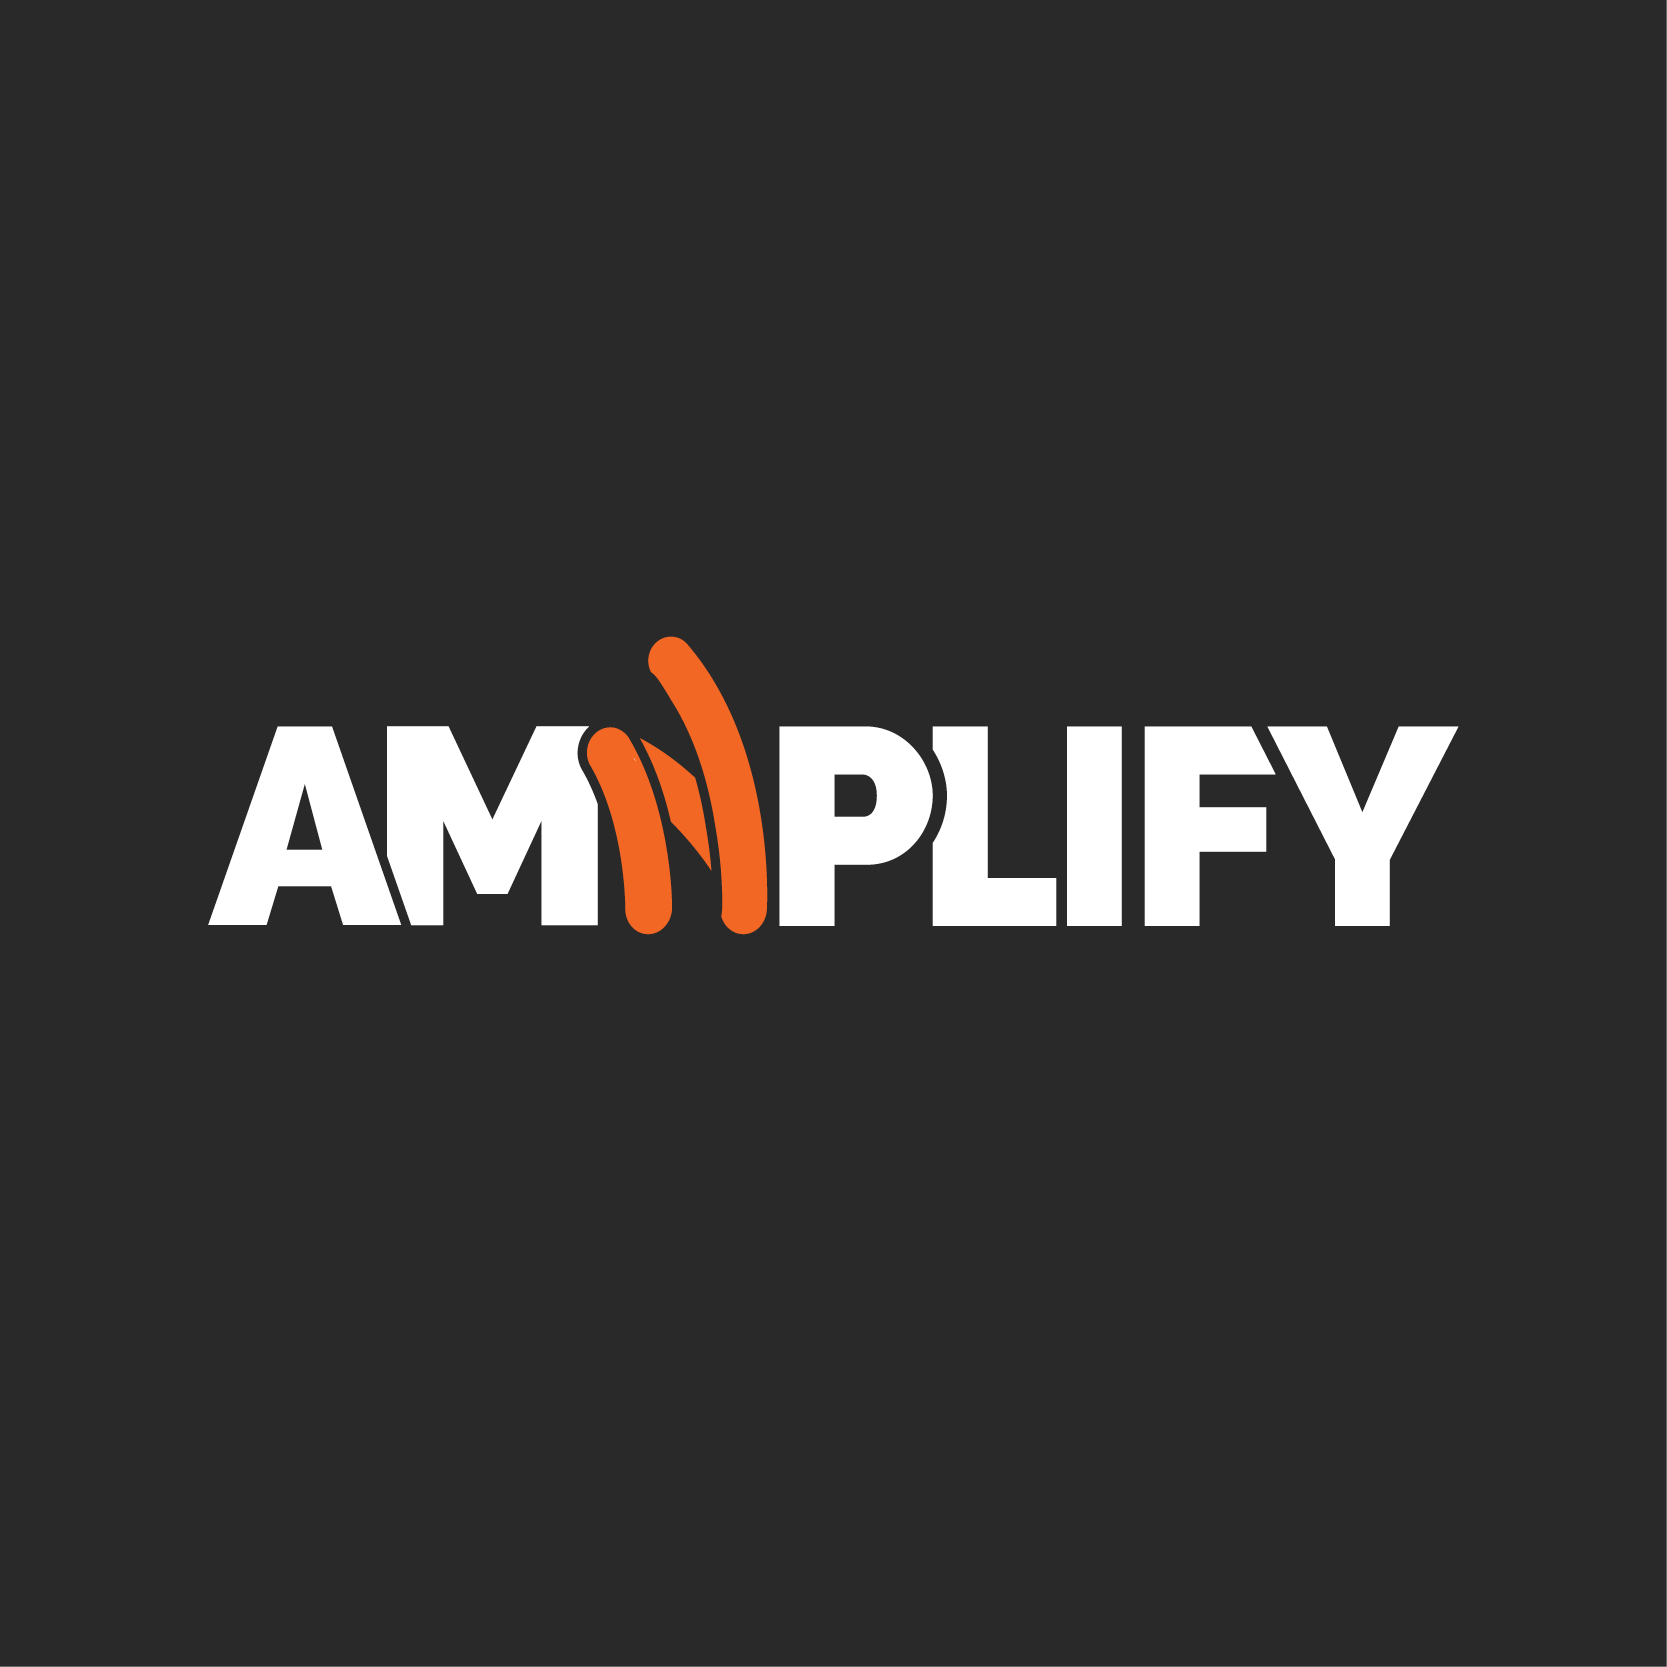 Amnplify Press Release